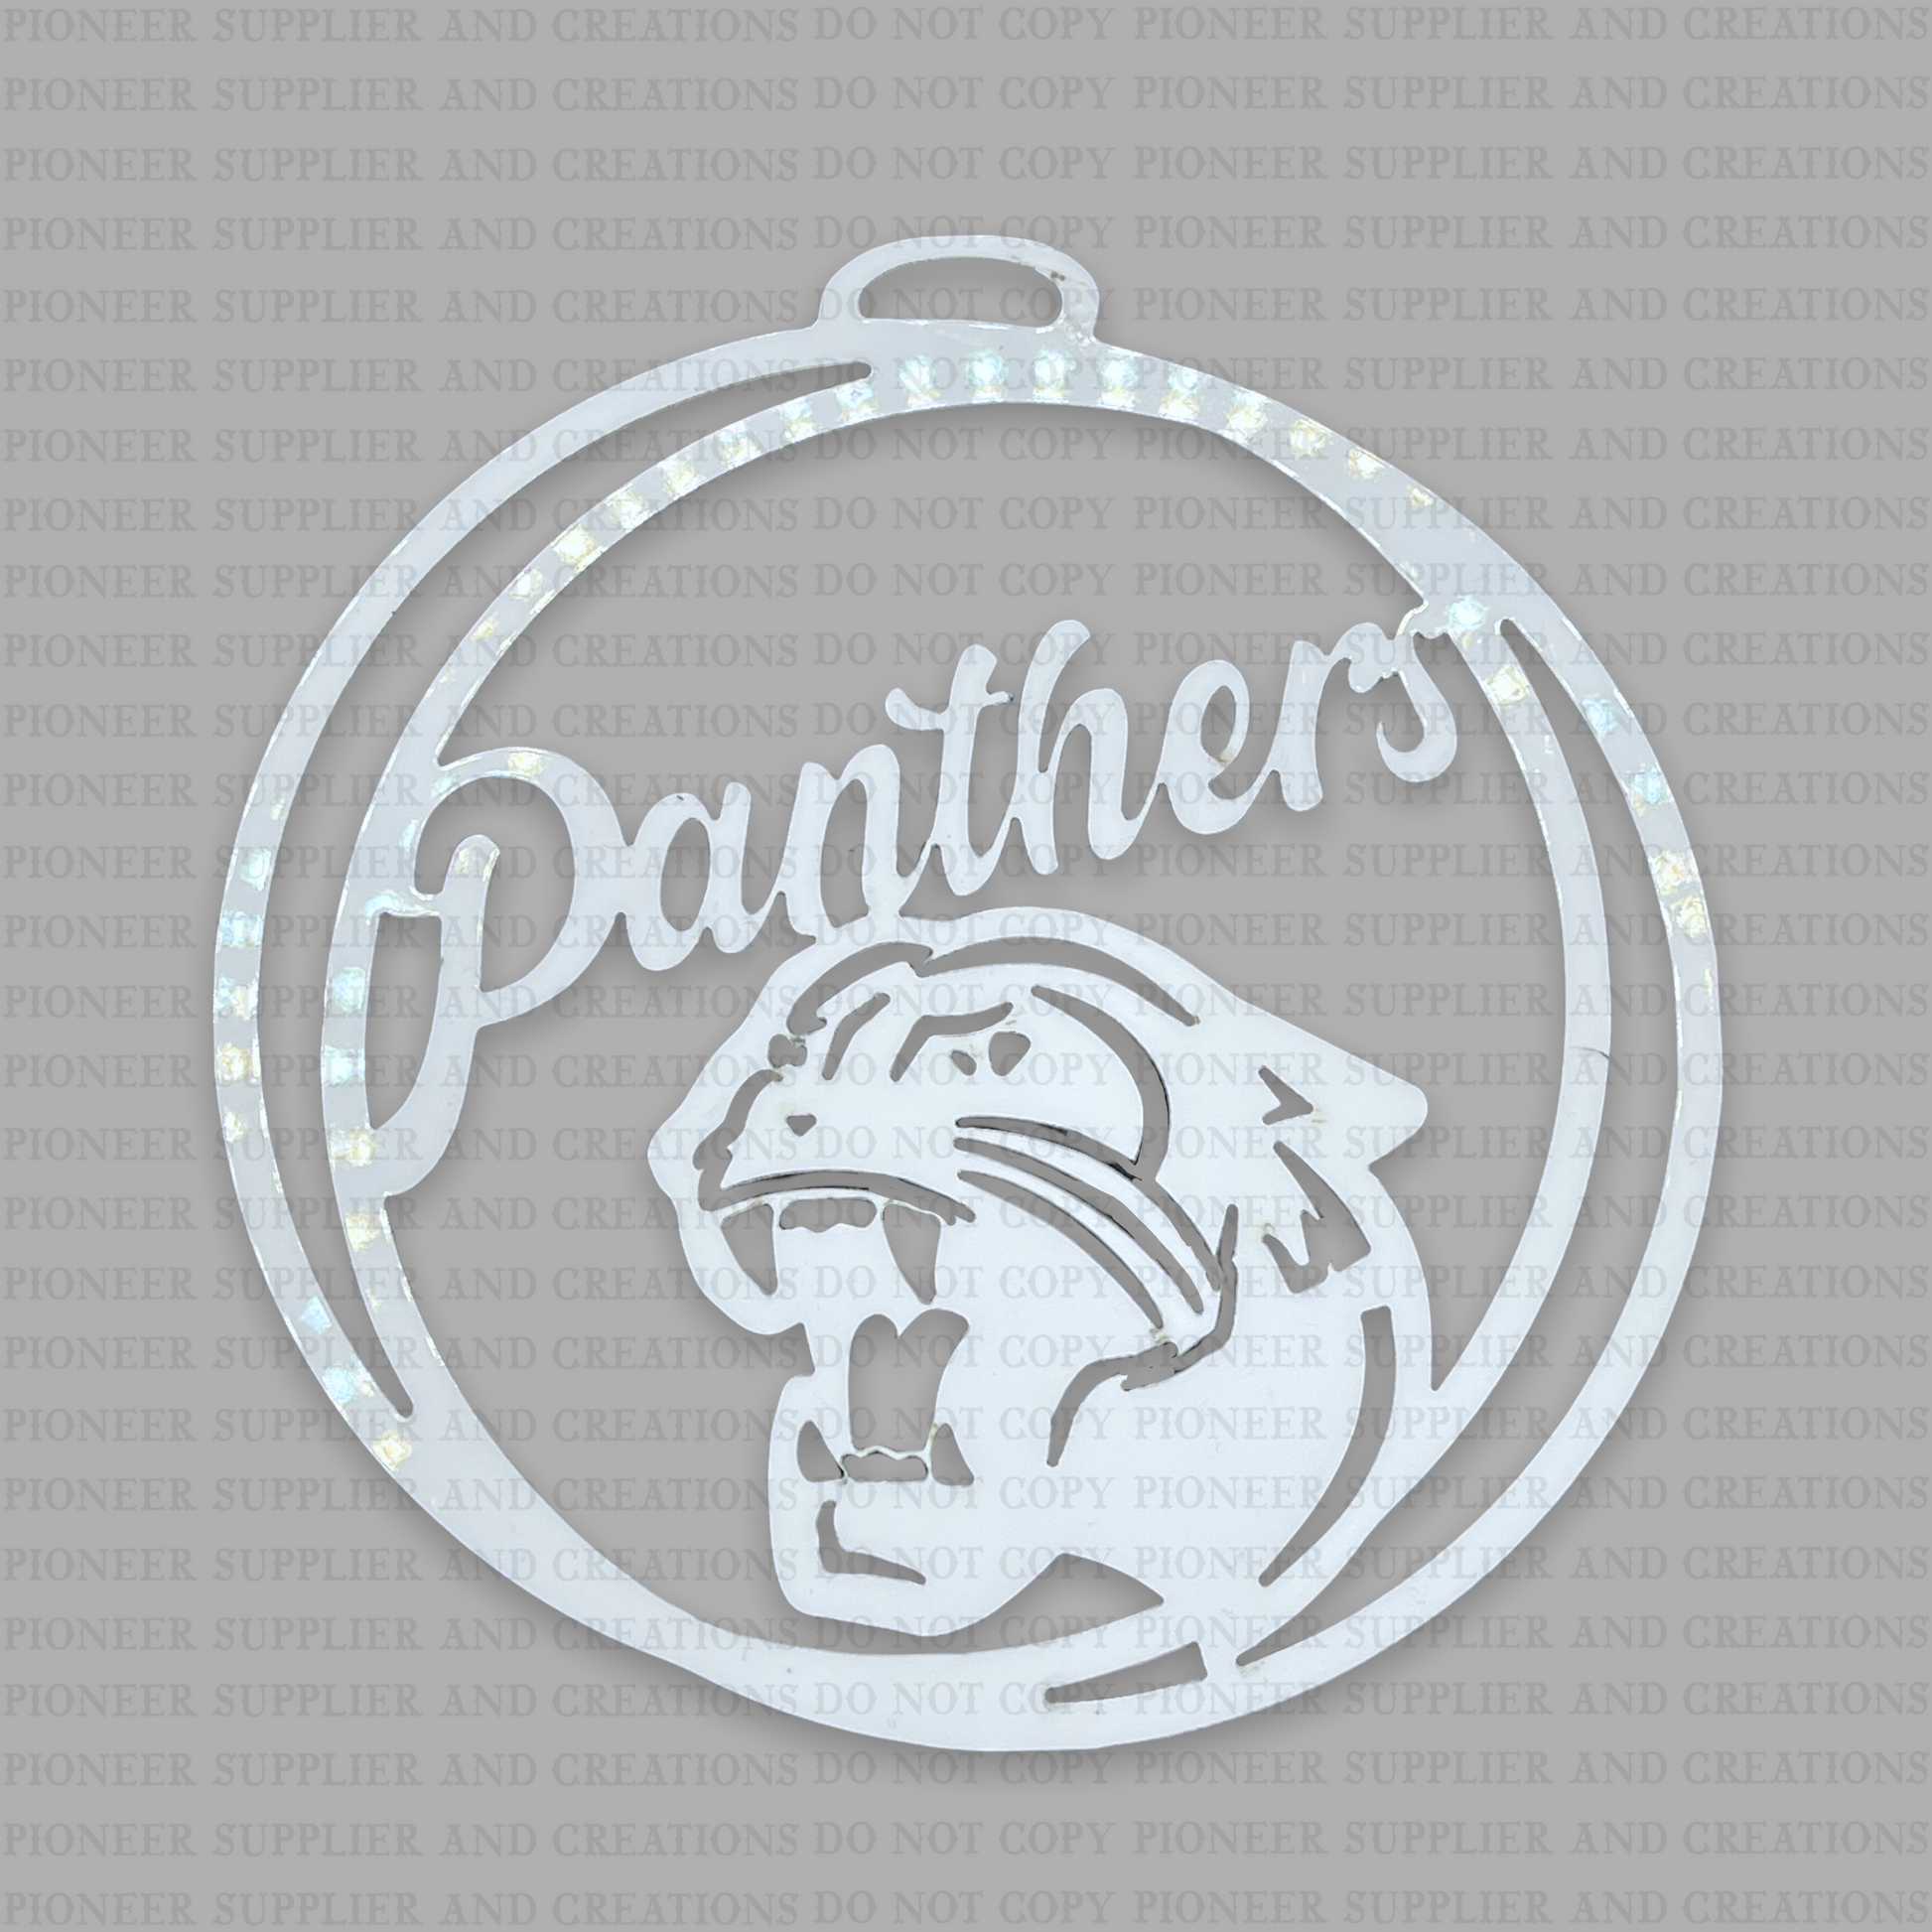 pioneer panthers